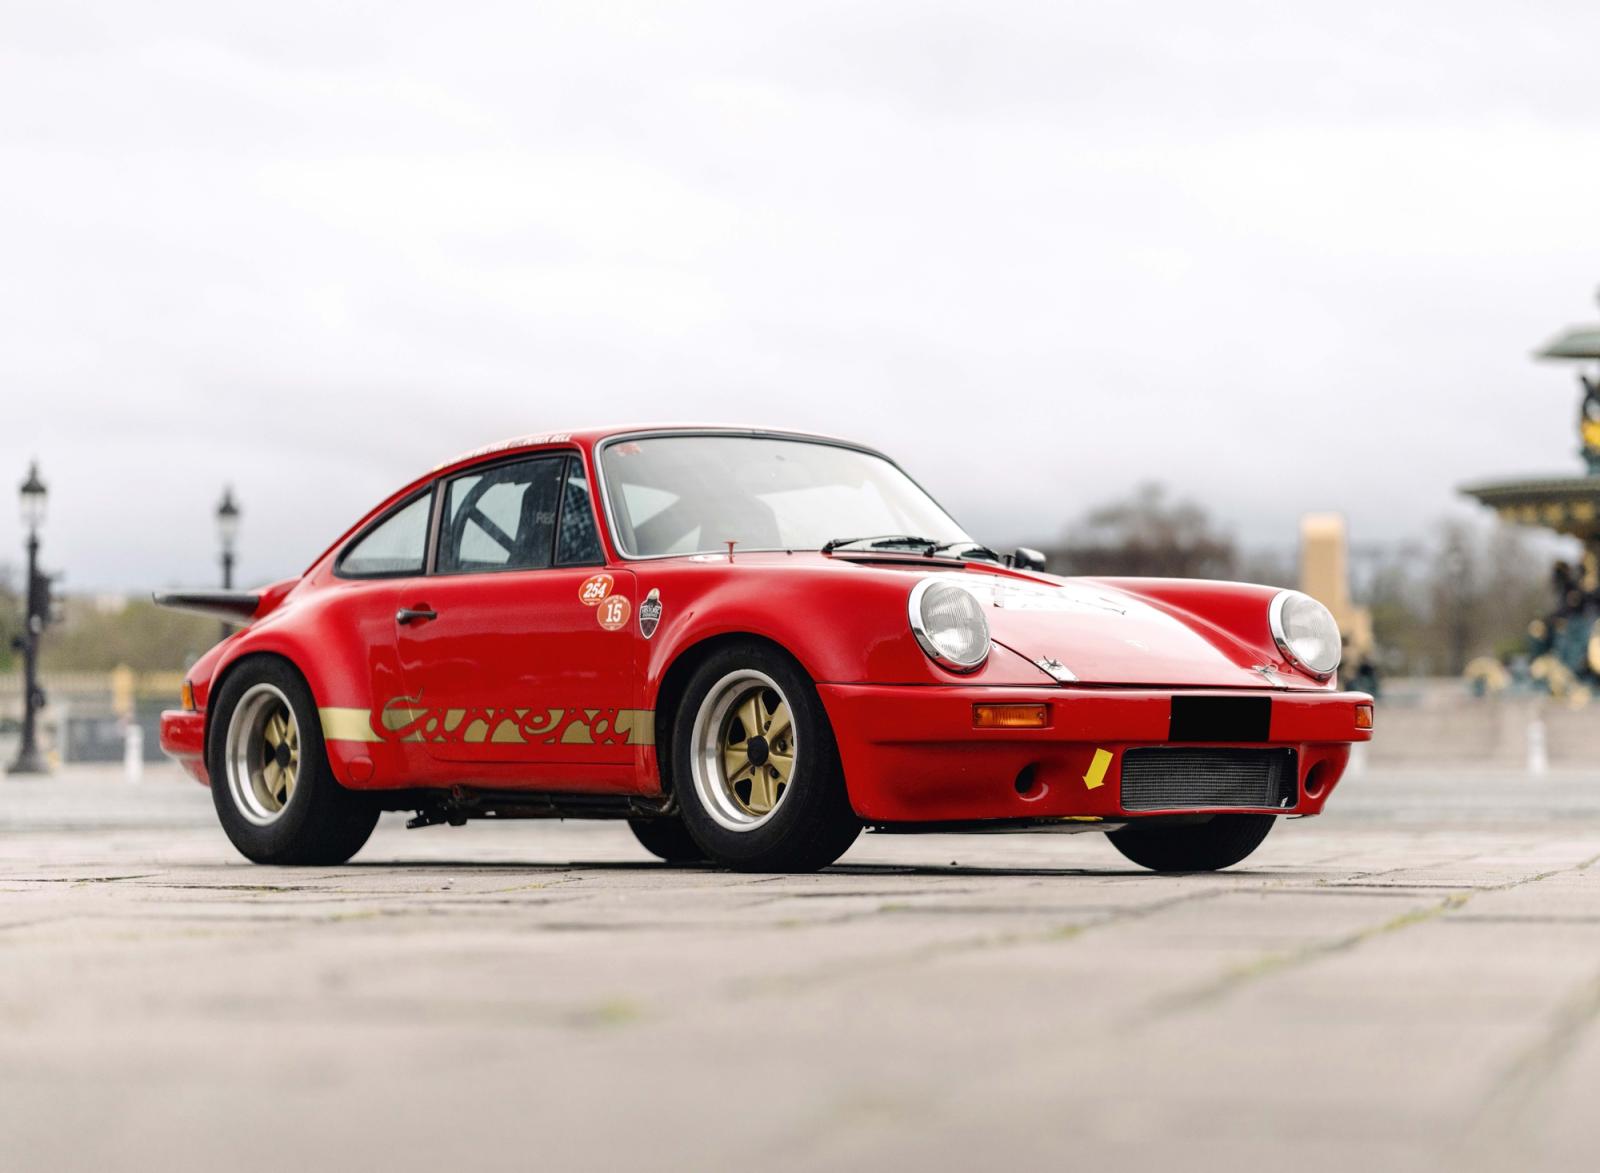 Porsche 911 Carrera 3.0, résultat millionnaire pour édition très limitée